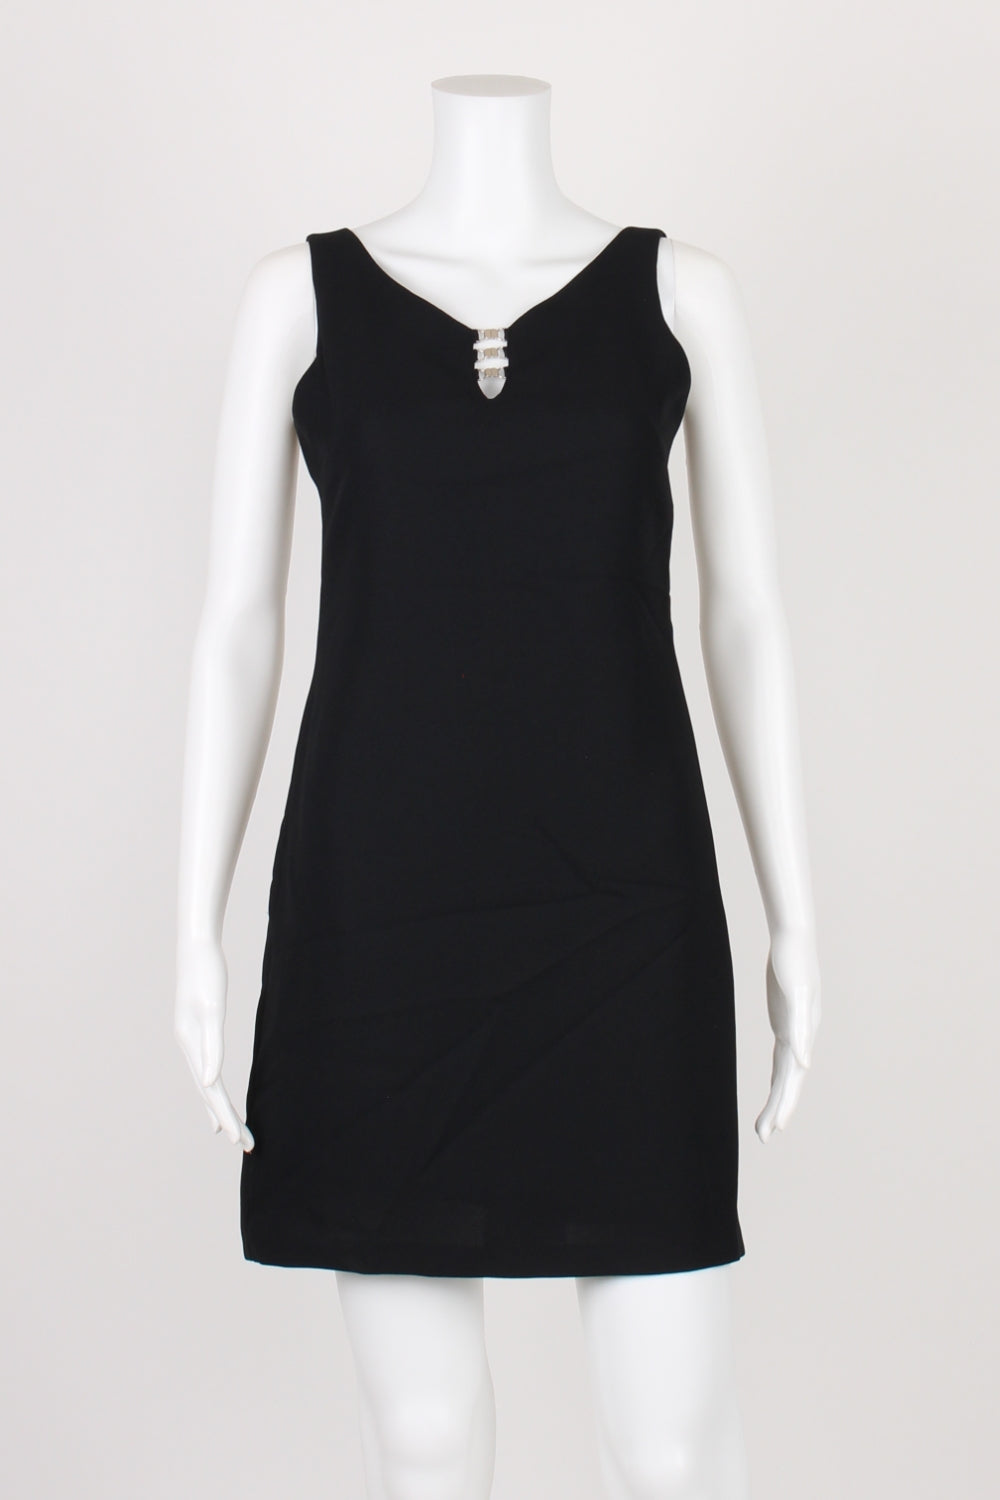 Sportsgirl Black Sleeveless Dress 8